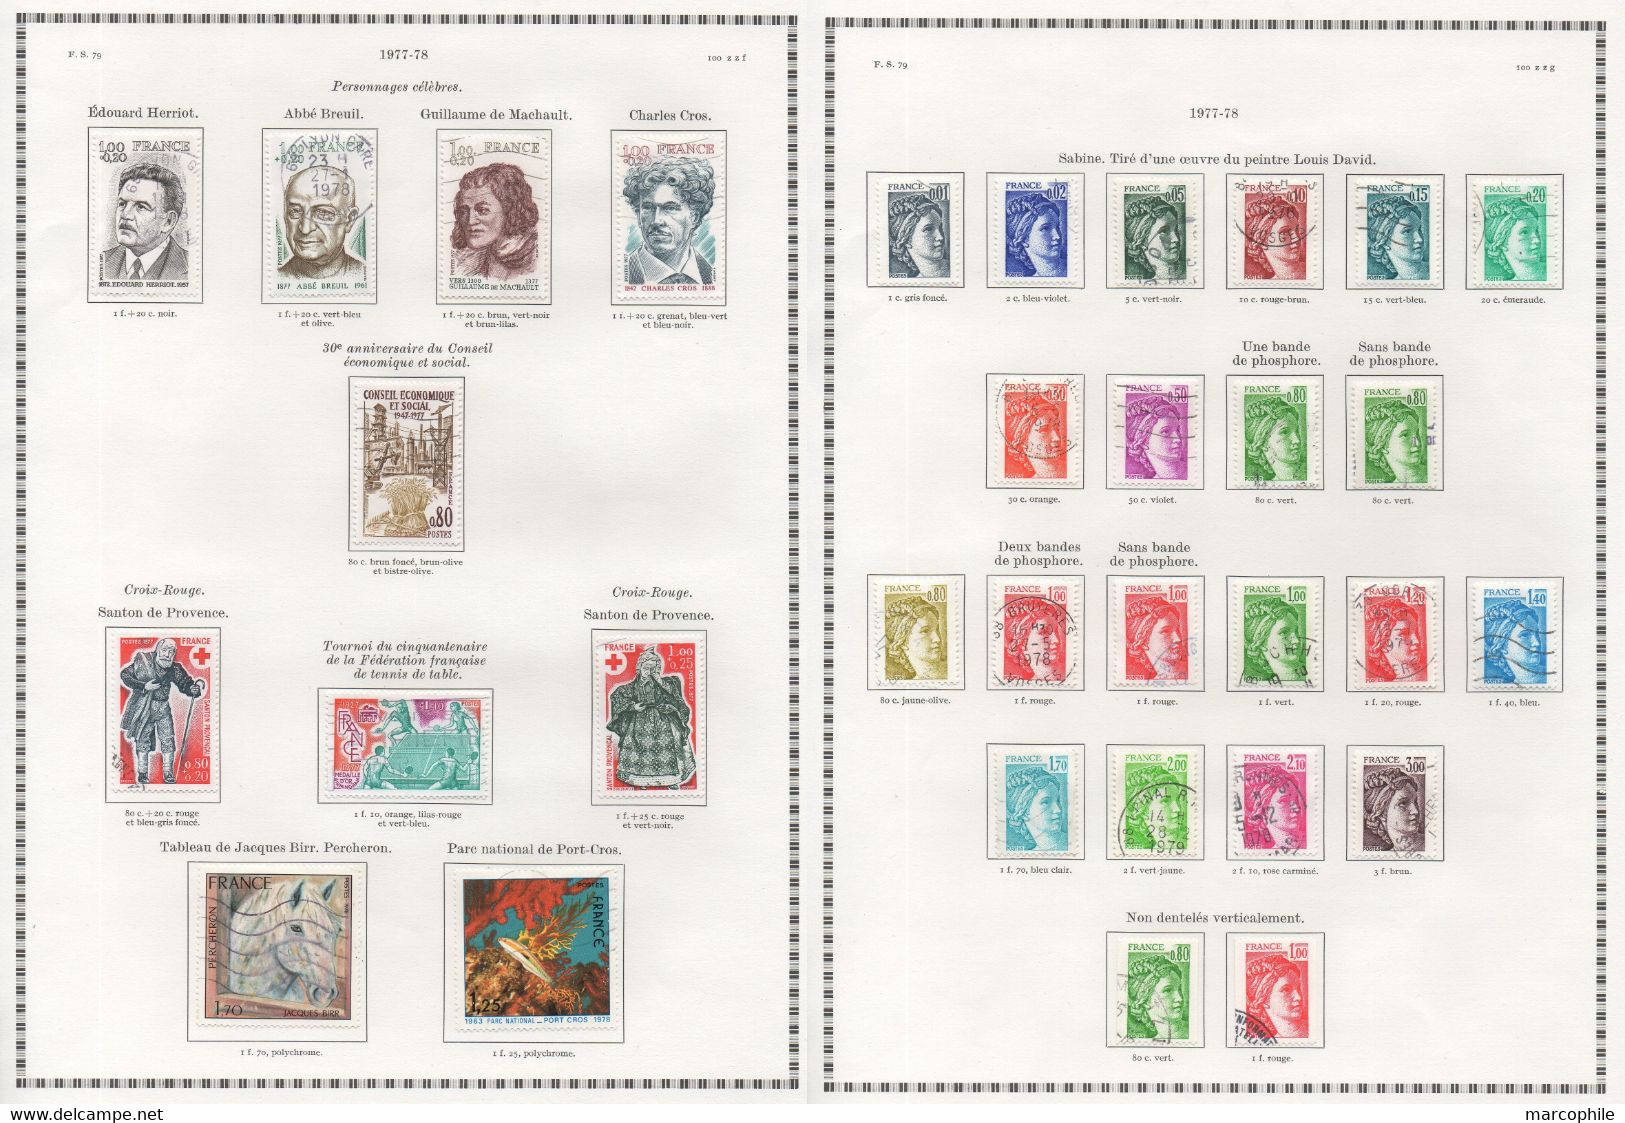 FRANCE / 1975 A 1979 - 5  ANNEES  COMPLETES OBLITEREES DU # 1830  AU 2072 / COTE 157.00 € / 12 IMAGES (ref  7302)